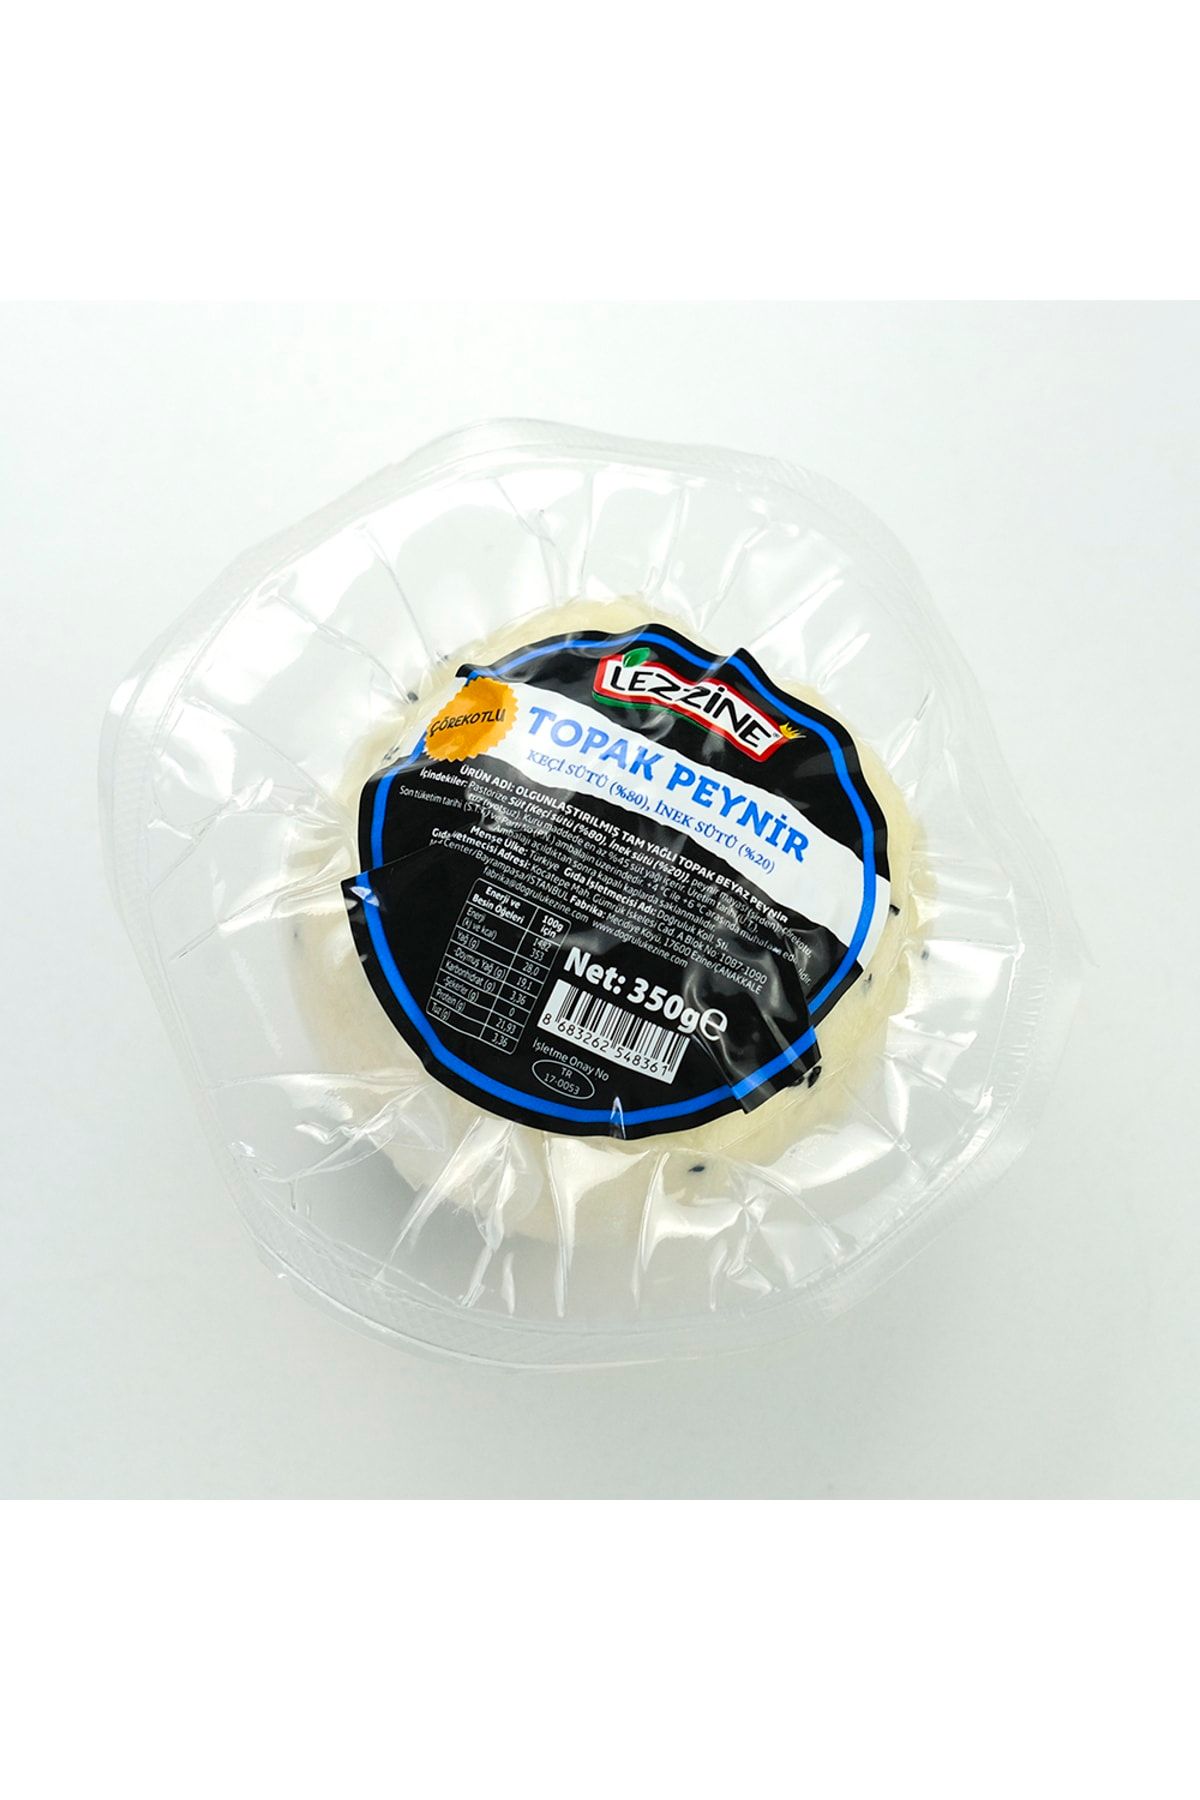 lezzine Çörek Otlu Topaki Peyniri 350g